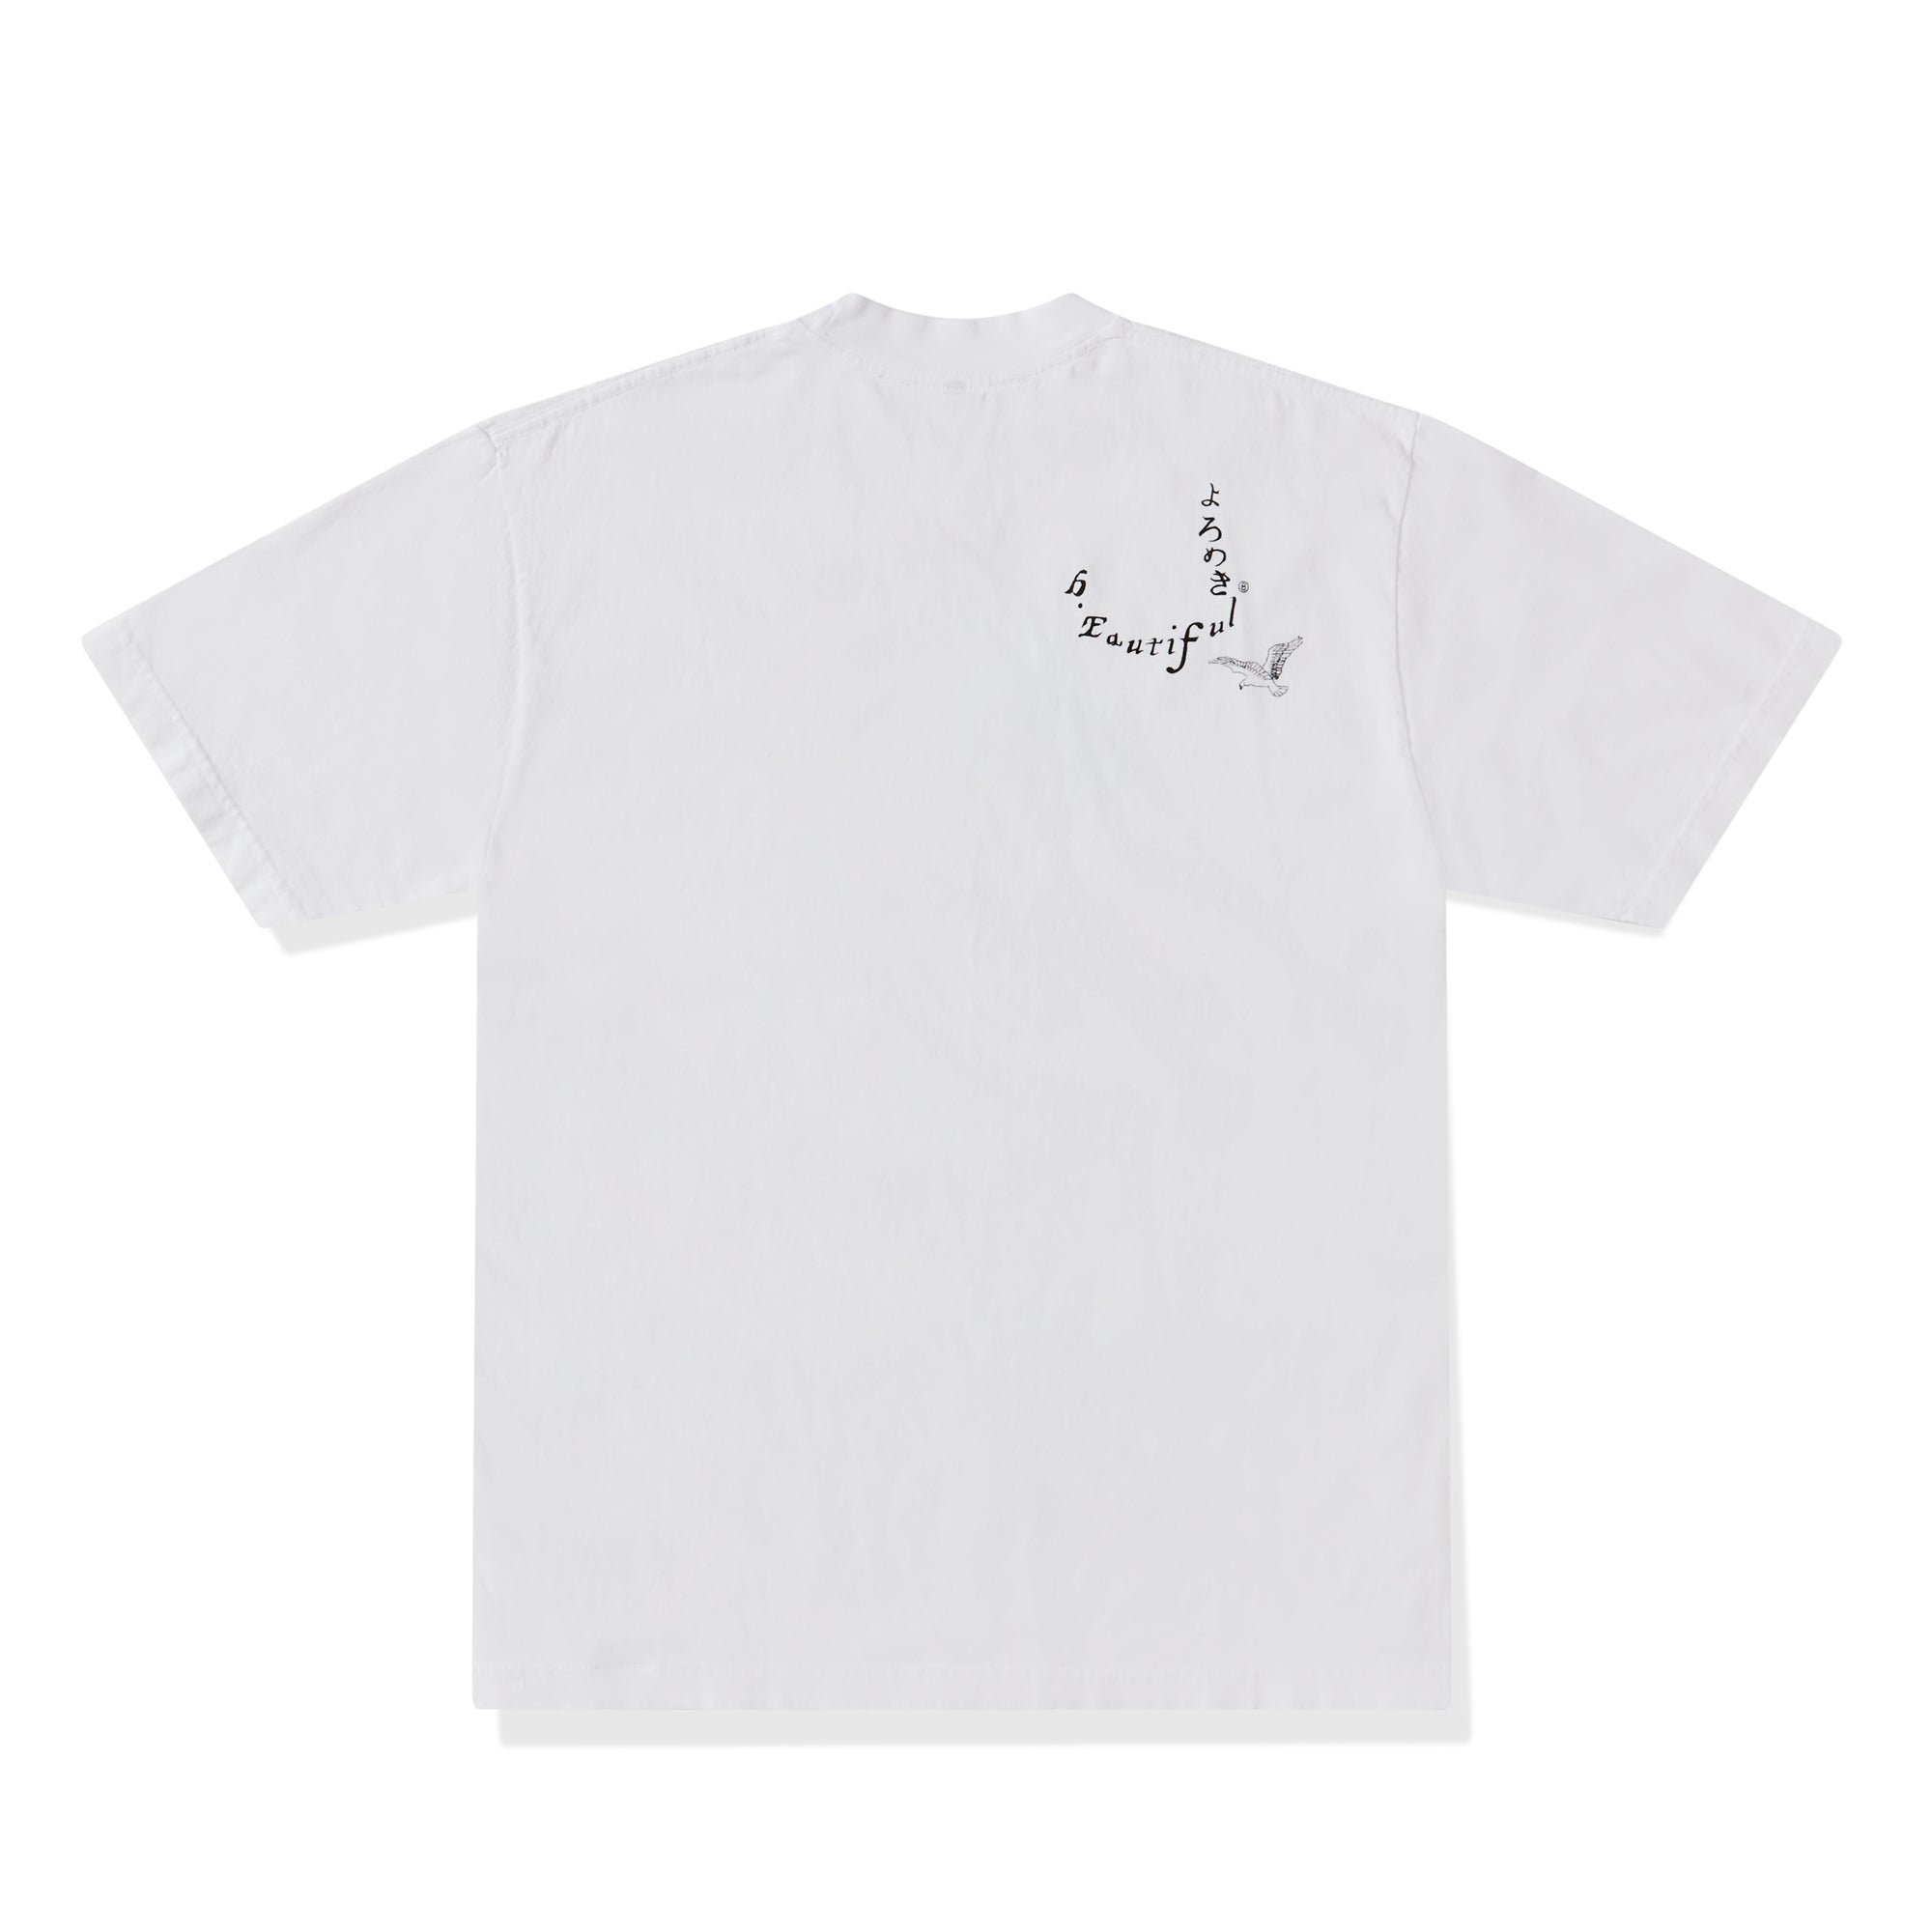 b.Eautiful - Stephanie Mendoza T-Shirt - (White) view 2